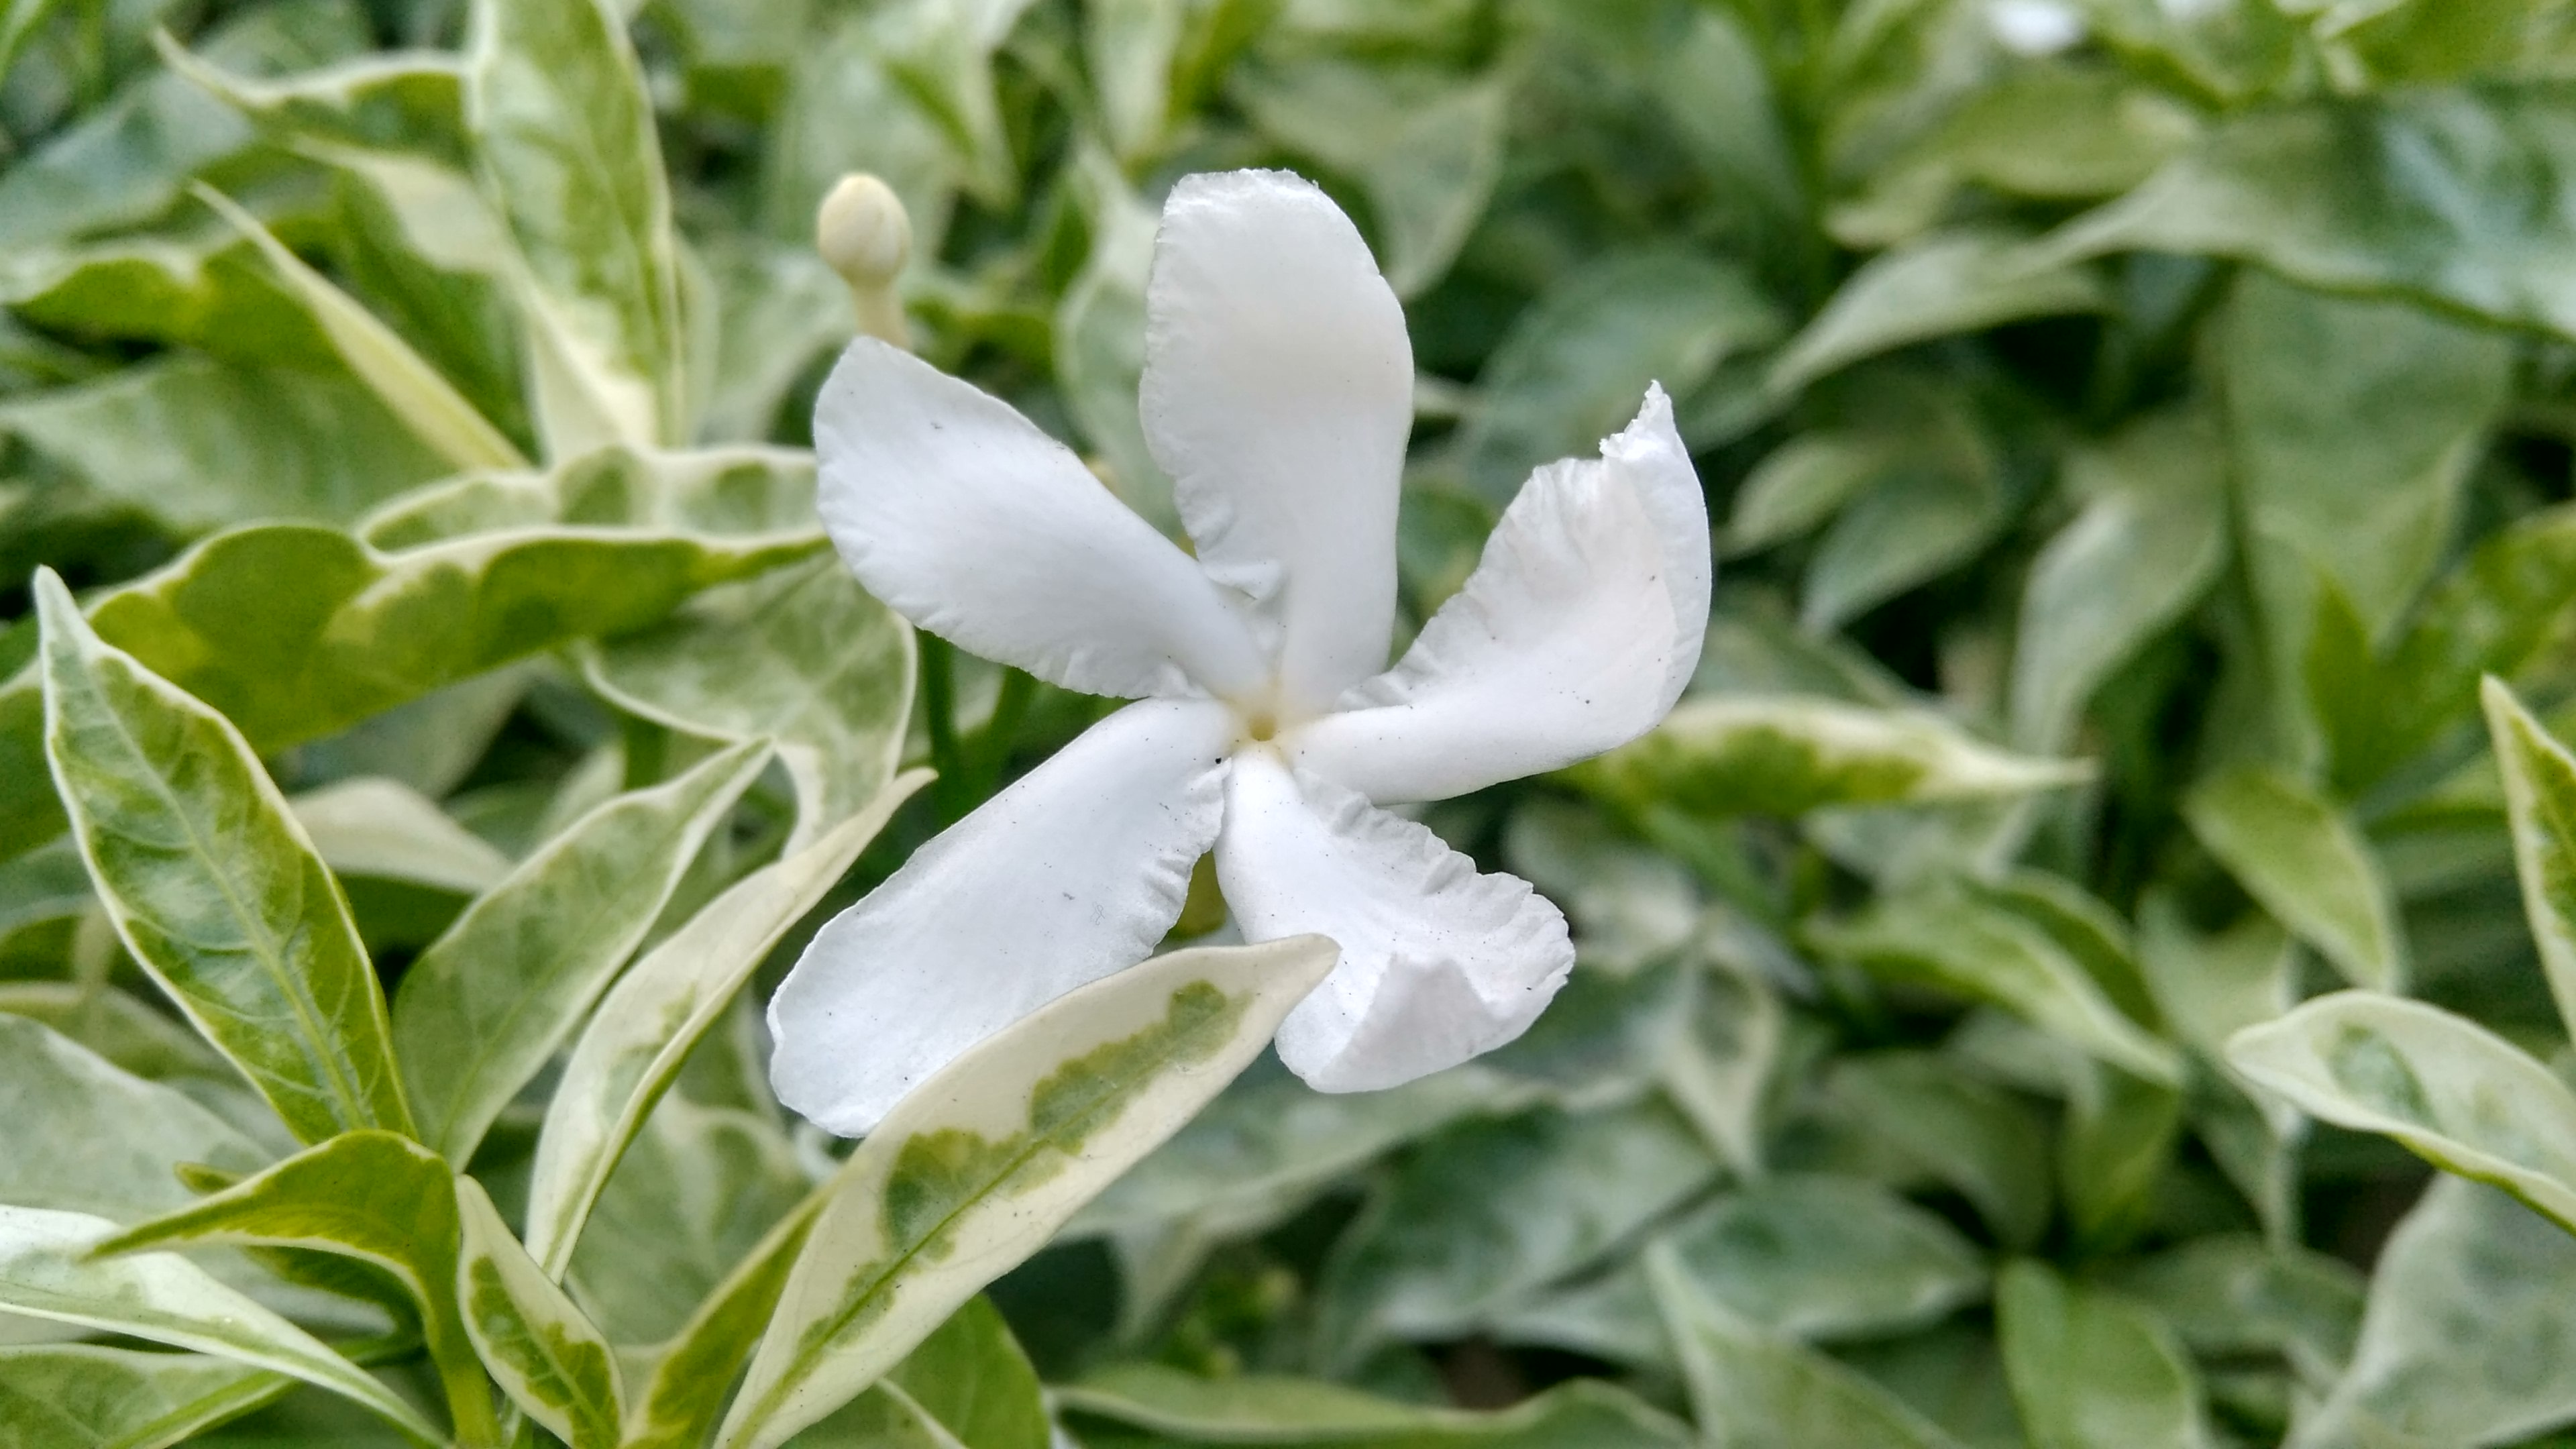 Pesona Keindahan Bunga Berwarna Putih Lewat Sebuah Fotografi Weku